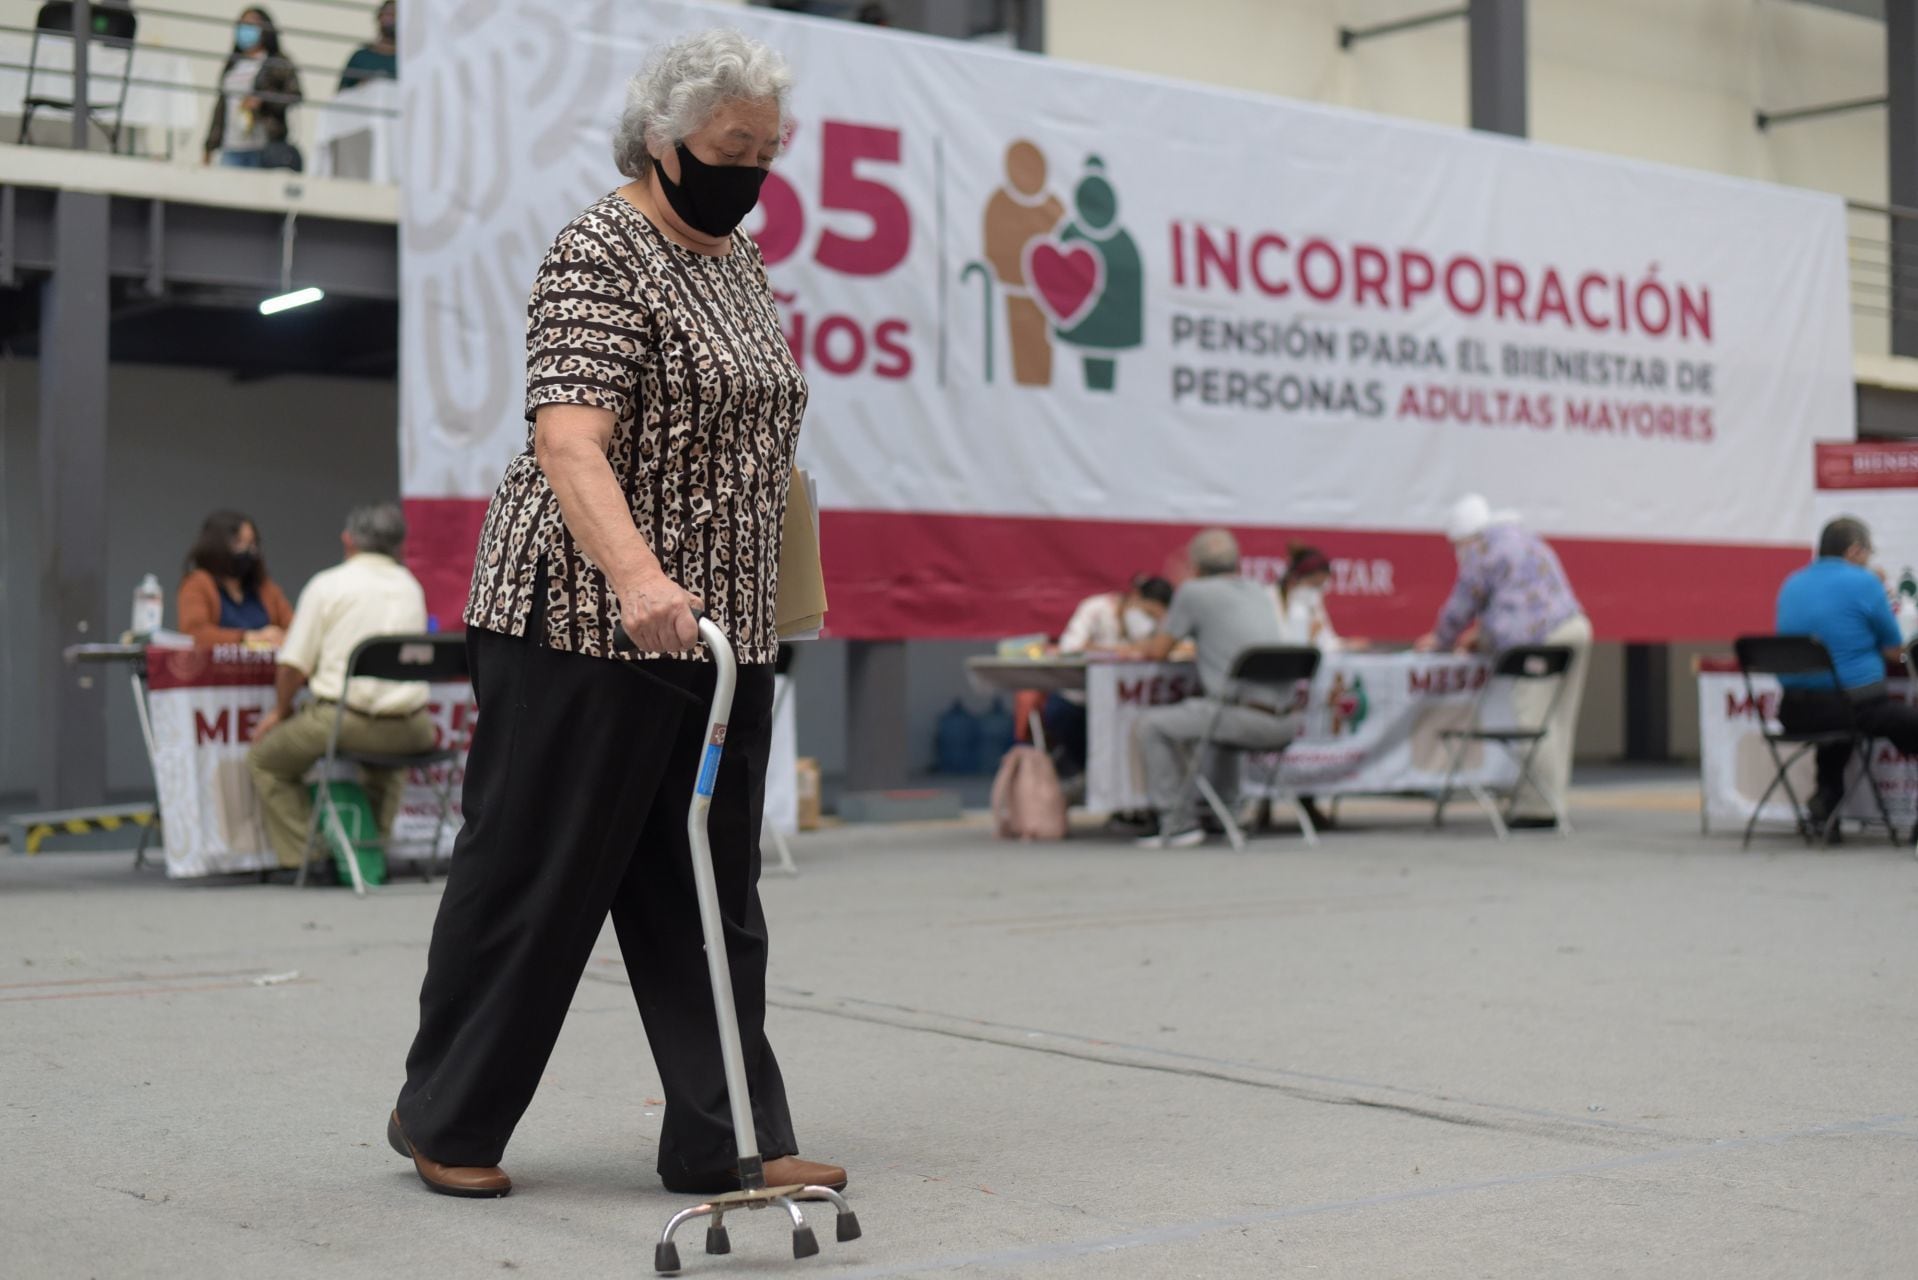 16 por ciento de los adultos mayores en México sufren de abandono y maltratos 

FOTO: YERANIA ROLÓN/CUARTOSCURO.COM